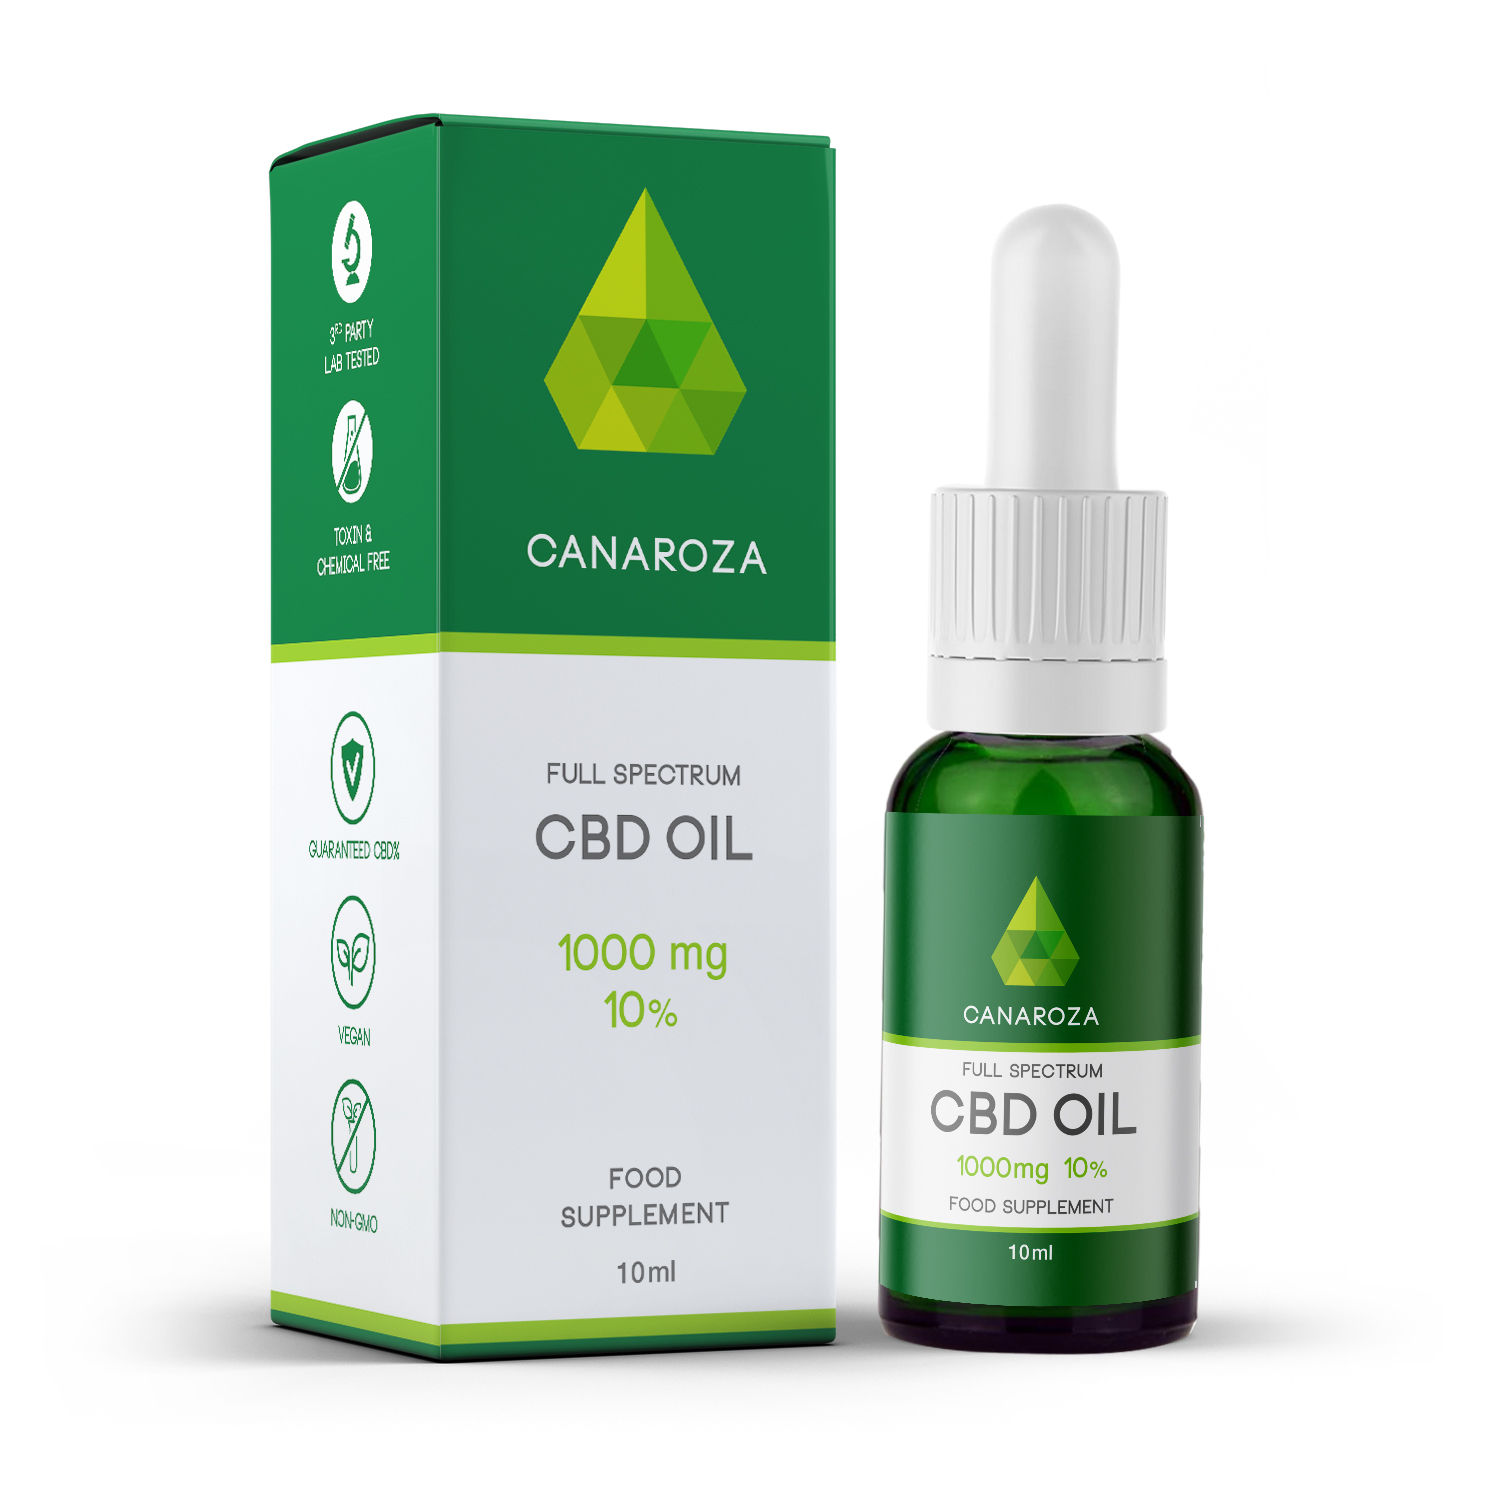 Billede af det ulovlige produkt: Canaroza CBD Oil (1000 mg / 10%)